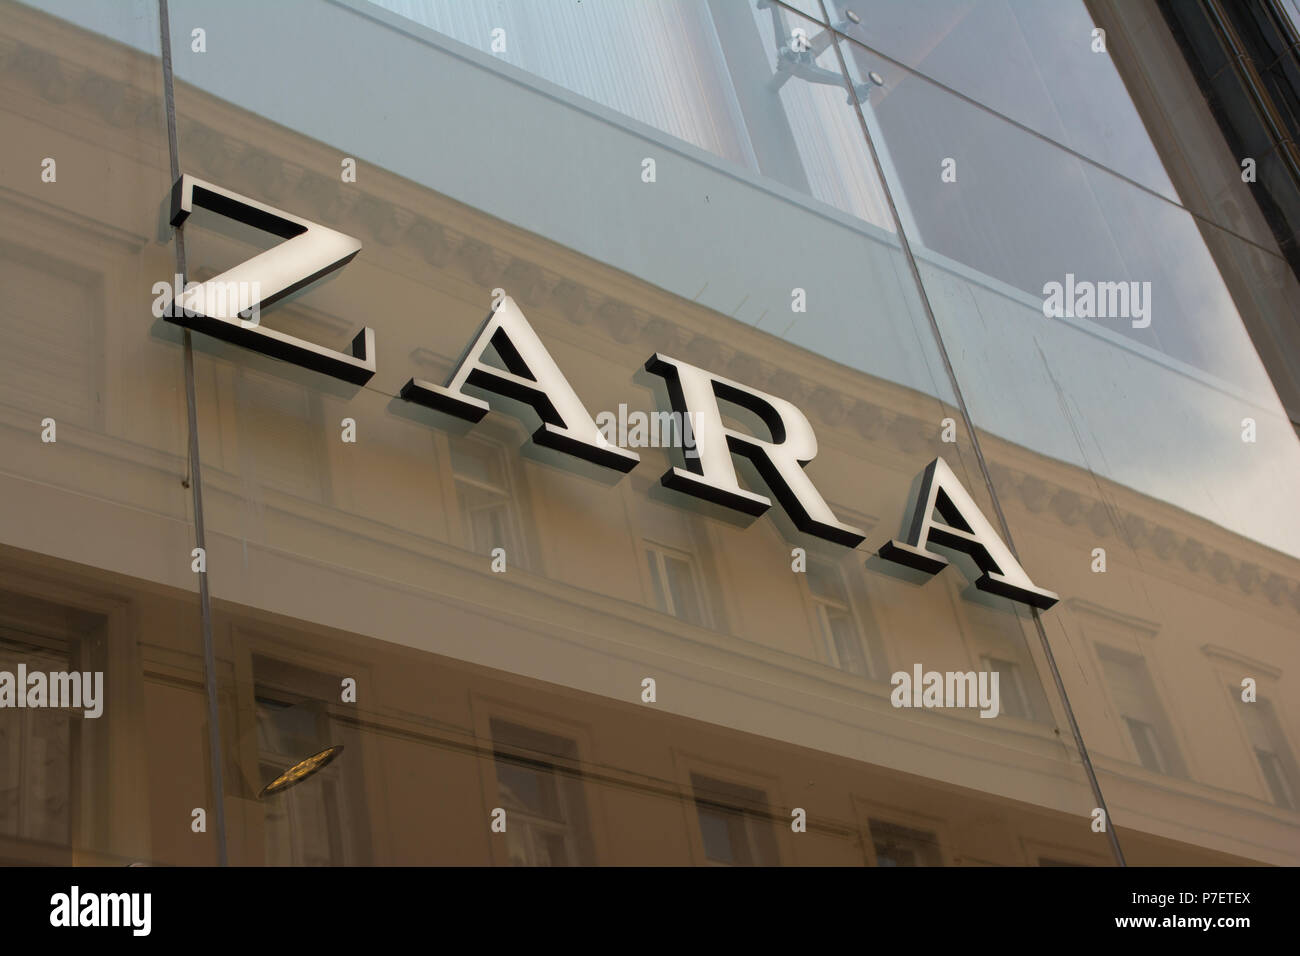 Budapest, Hungría, el 5 de julio de 2018: tienda de Zara en Budapest, en la calle Vaci. Zara es una de las mayores empresas de moda internacional y es el buque insignia de la cadena de almacenes del grupo Inditex. Foto de stock